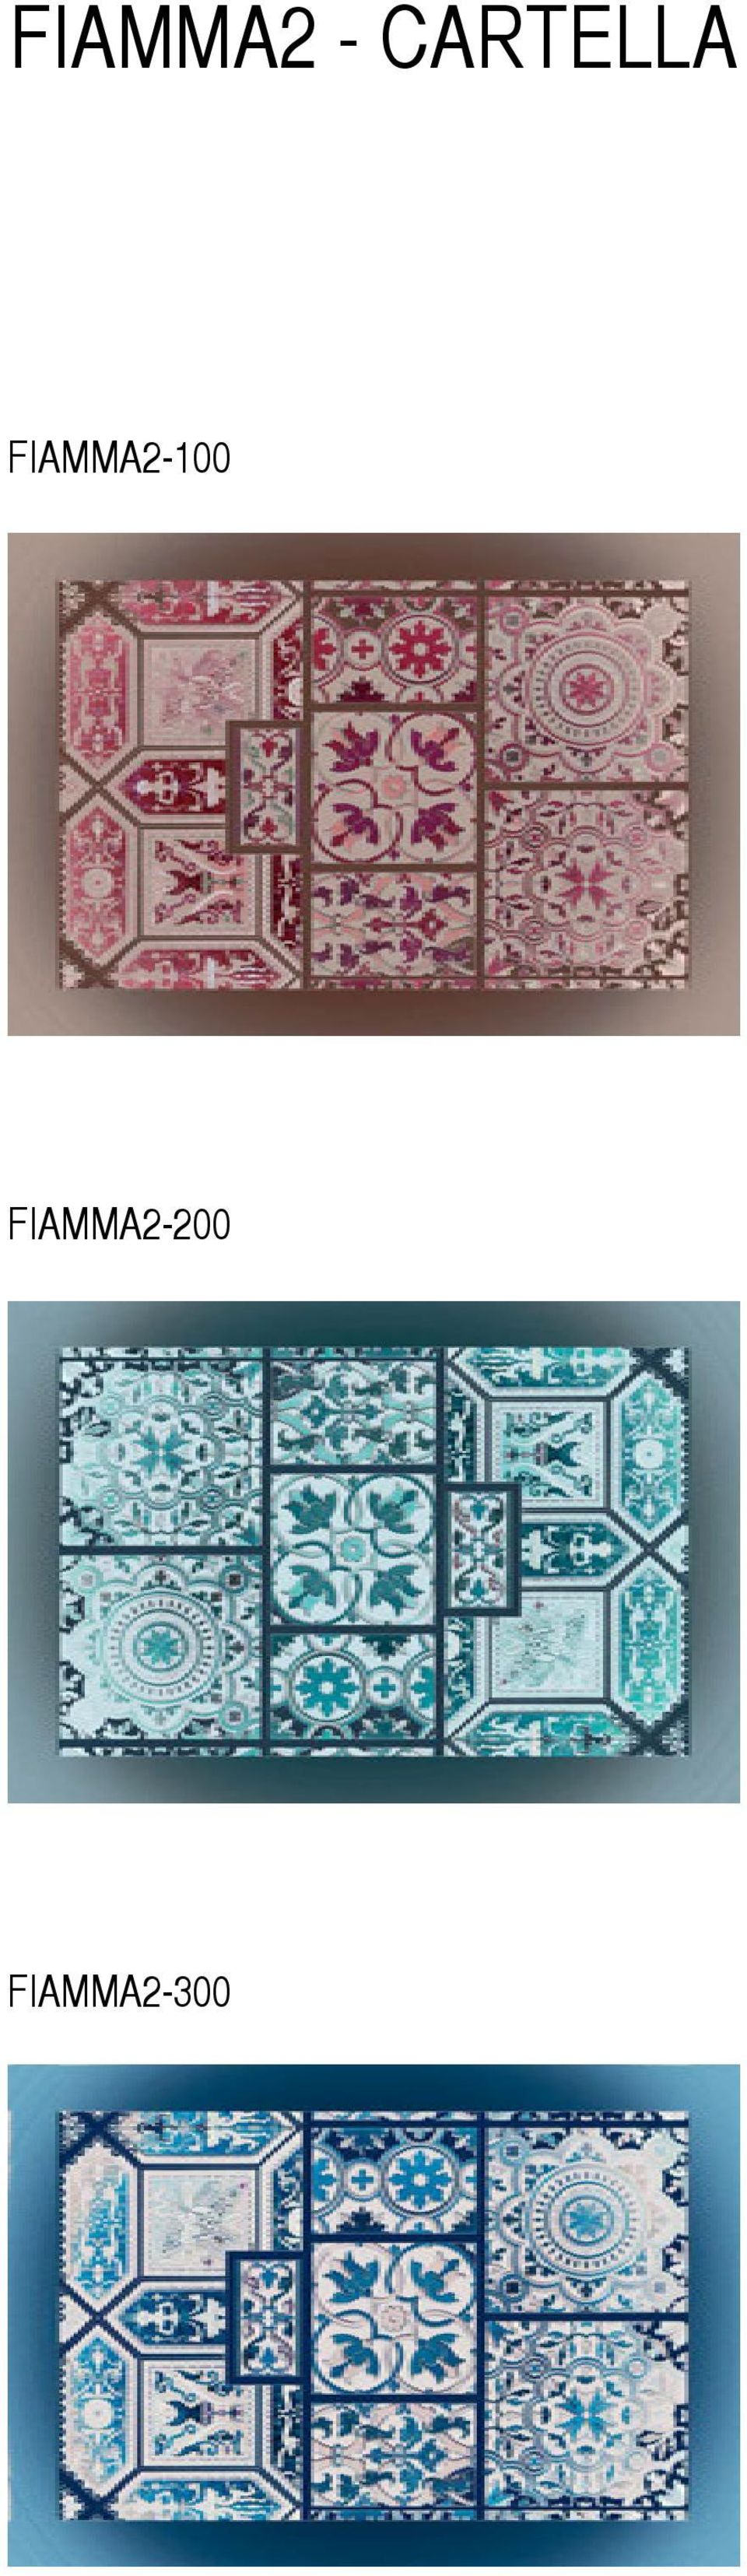 FIAMMA2-100